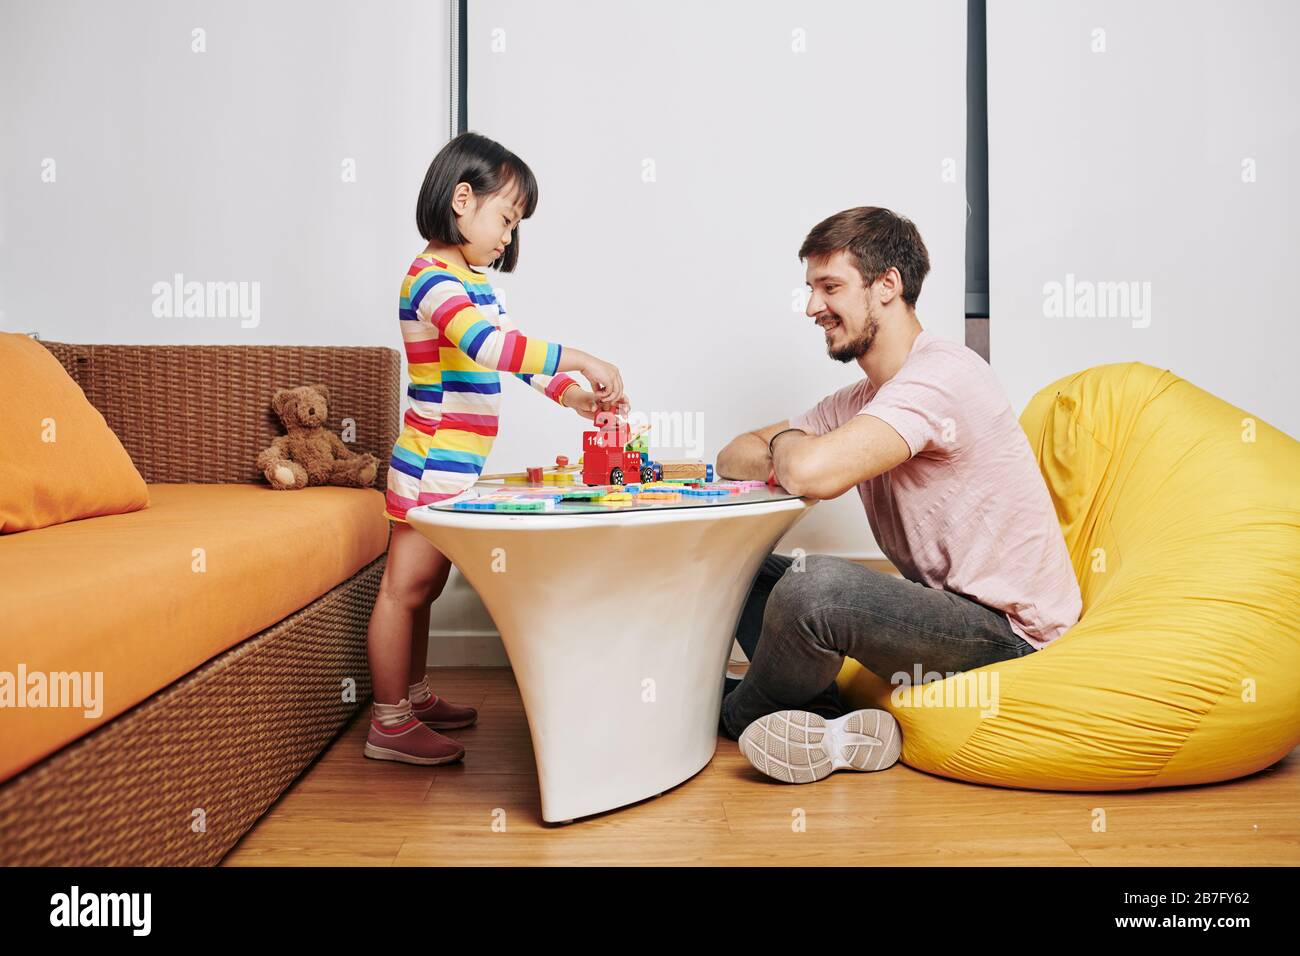 Lächelnder junger Mann, der mit kleiner Tochter spielt, Puzzle macht und Turm baut Stockfoto